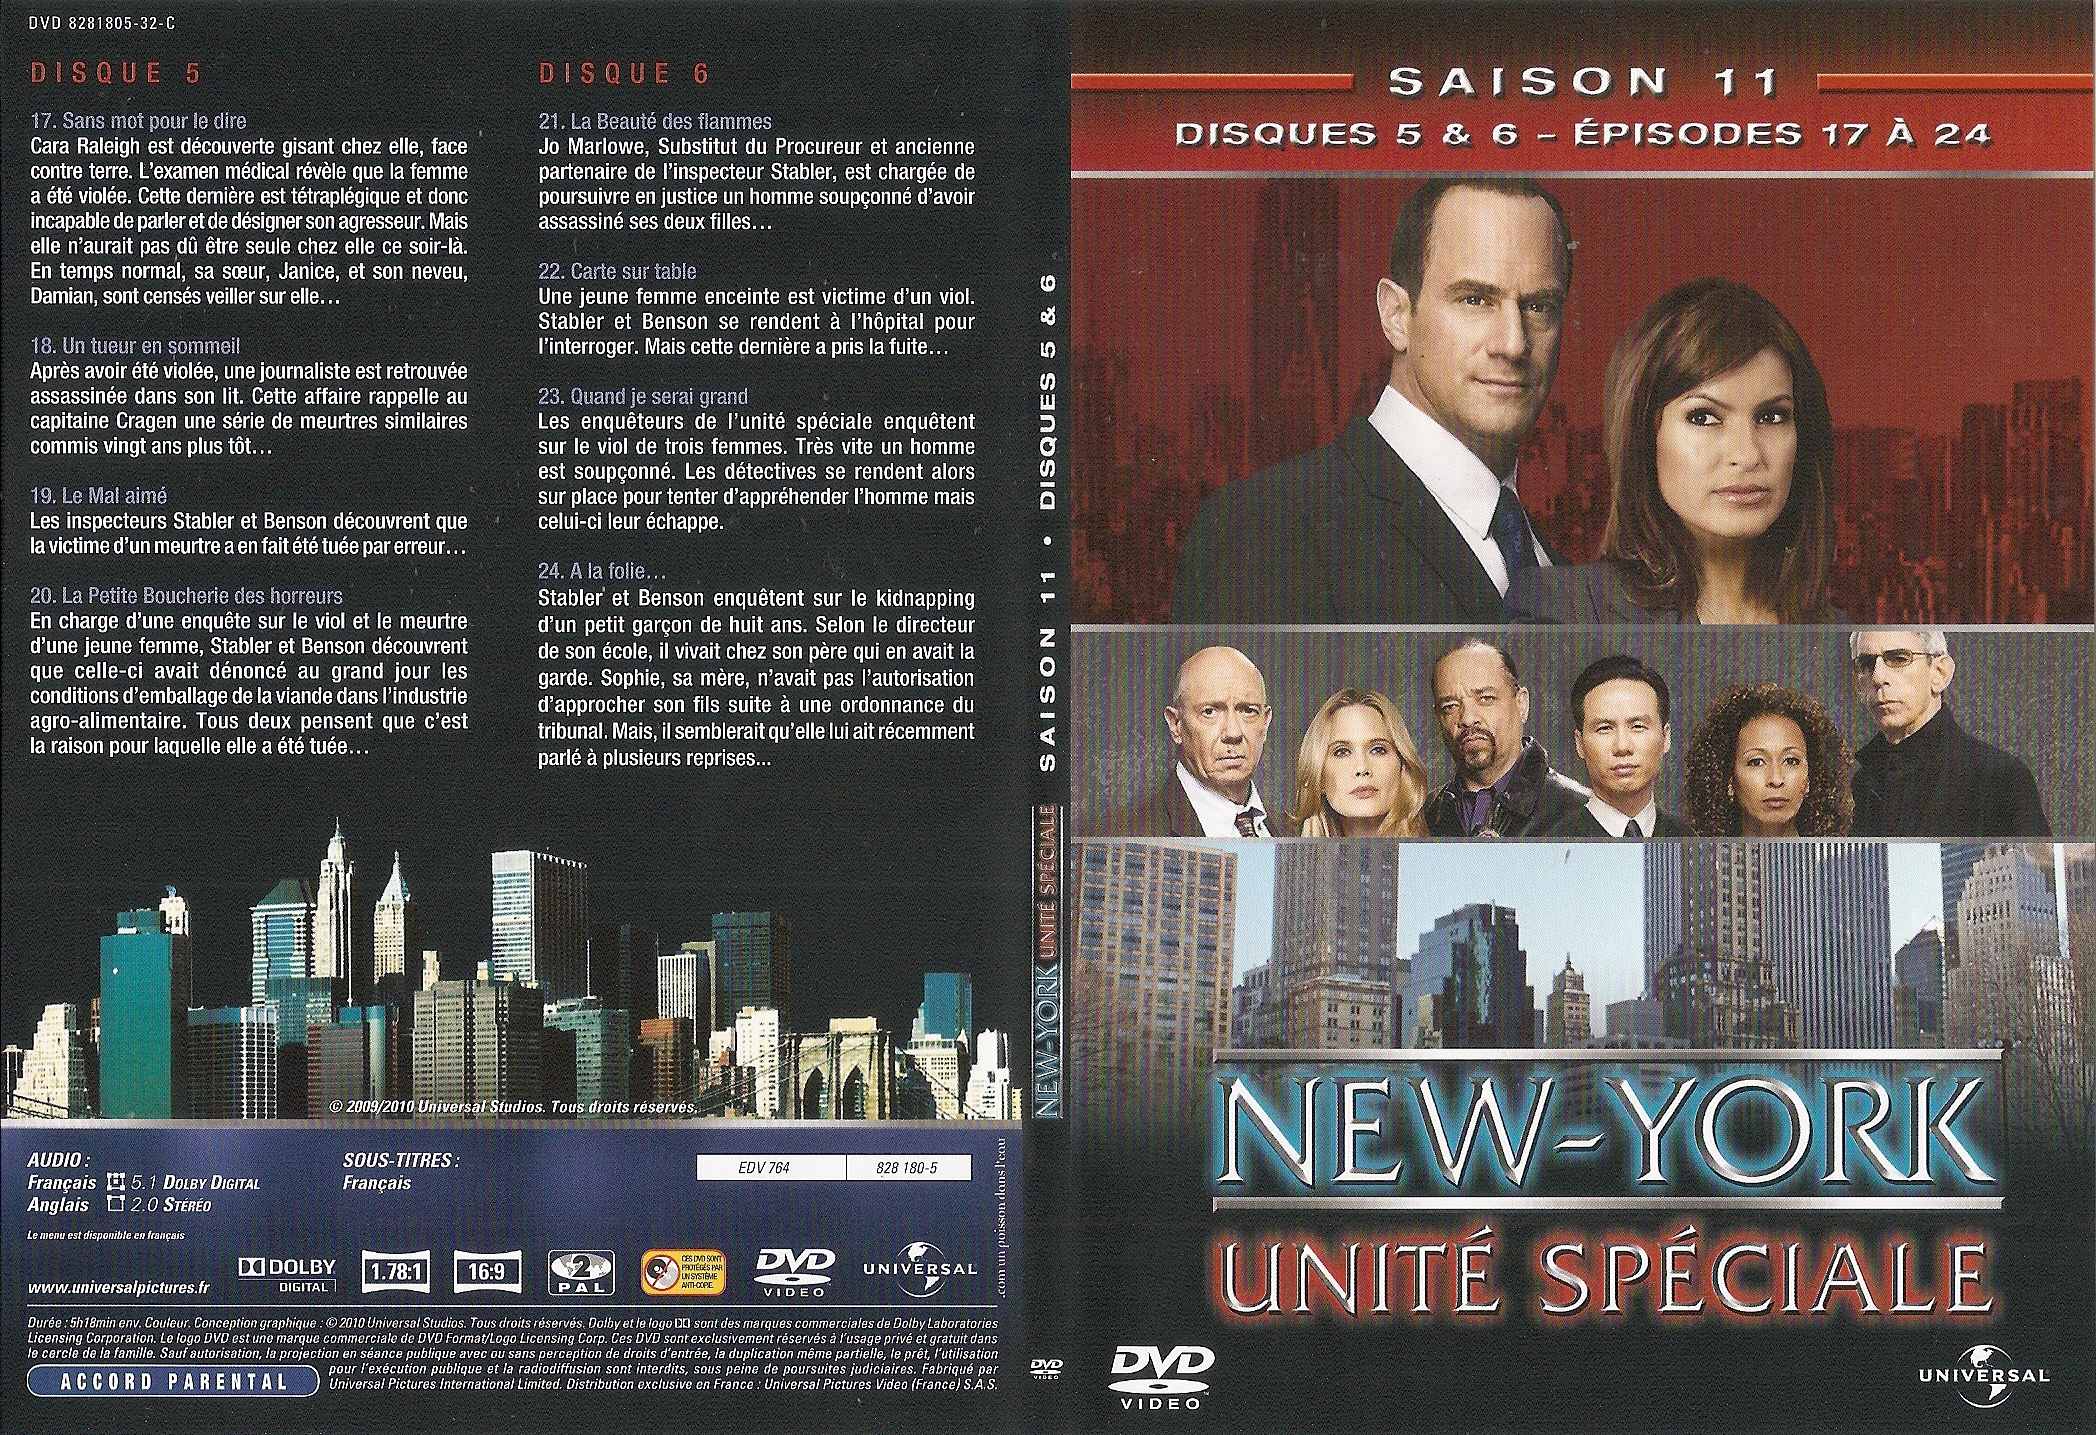 Jaquette DVD New York unit spciale saison 11 DVD 3